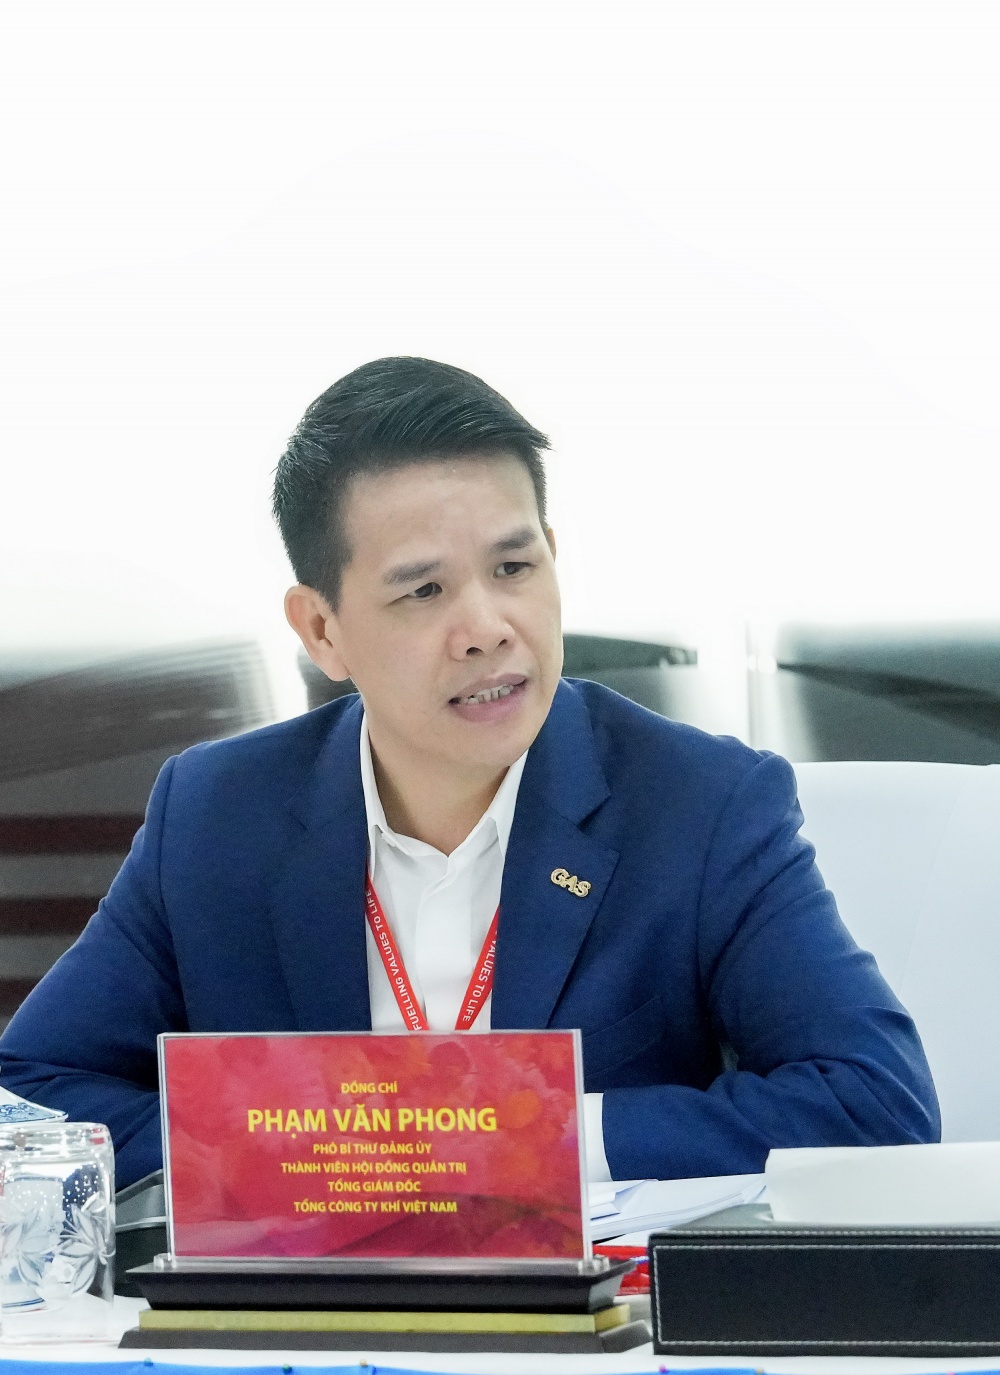 Đồng chí Phạm Văn Phong - Phó Bí thư Đảng ủy, Thành viên HĐQT, Tổng giám đốc PV GAS phát biểu tại Hội nghị